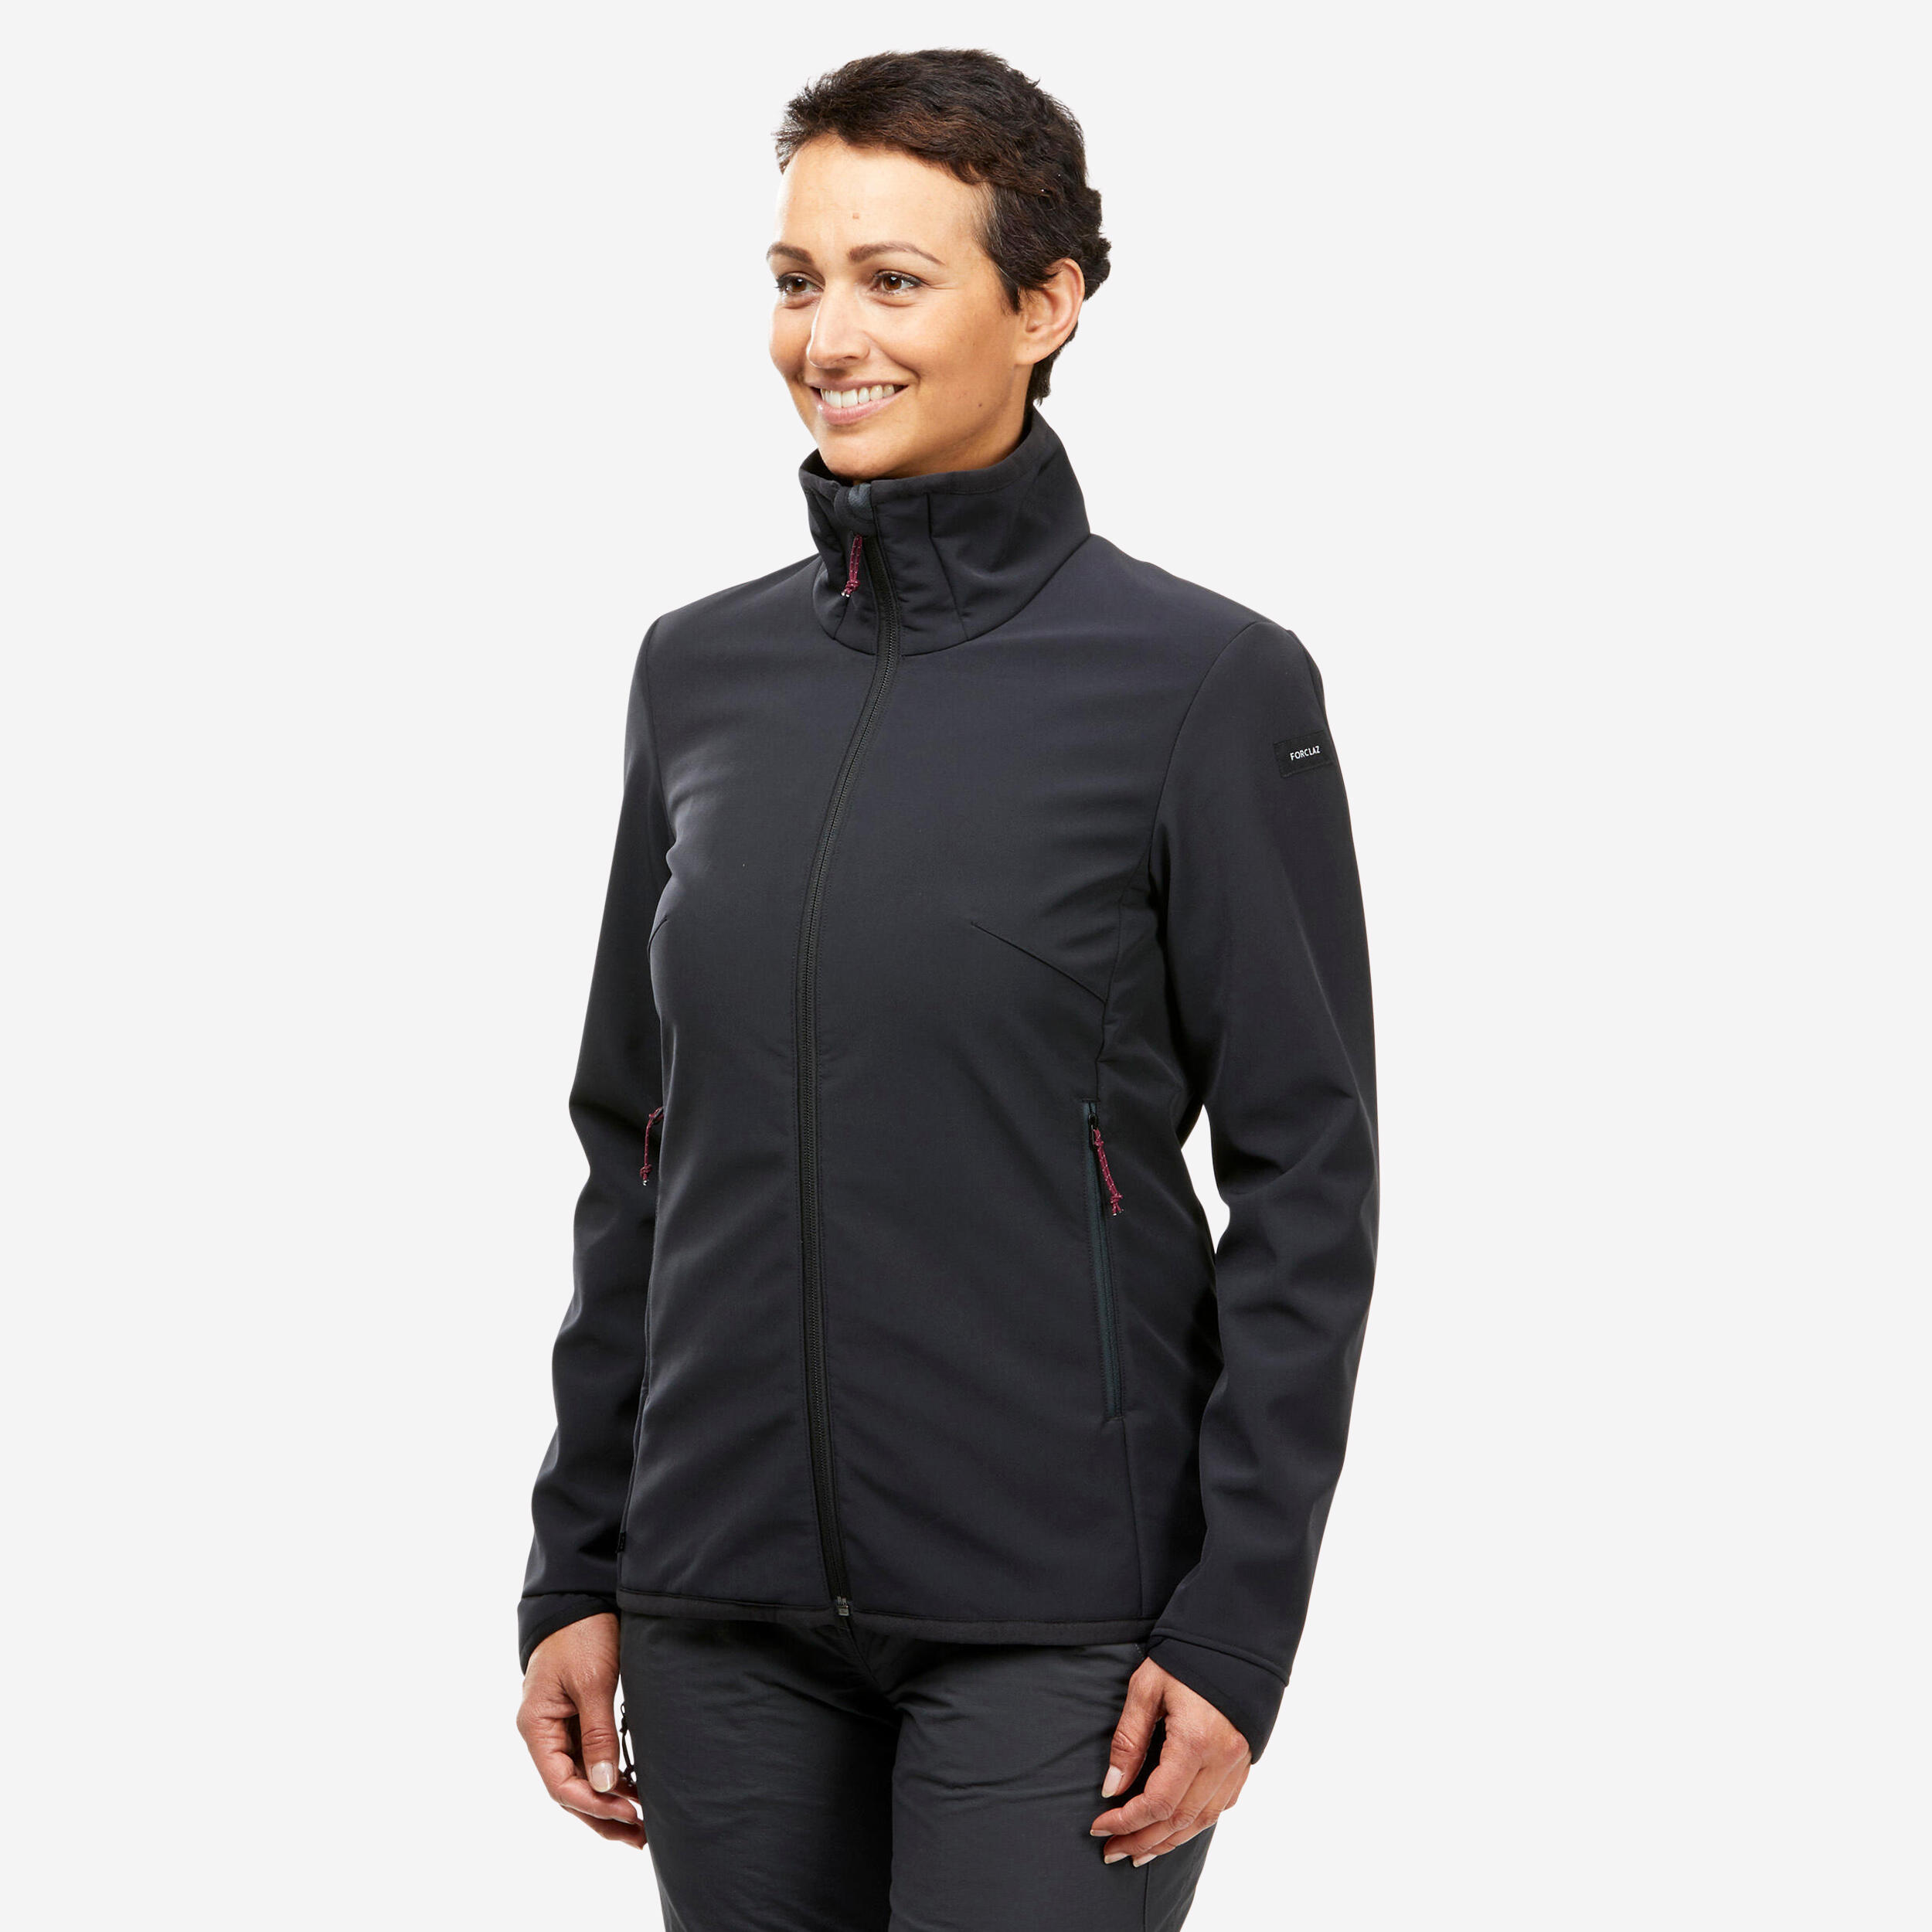 FORCLAZ Windbreaker jacket - softshell - warm - MT100 - women’s